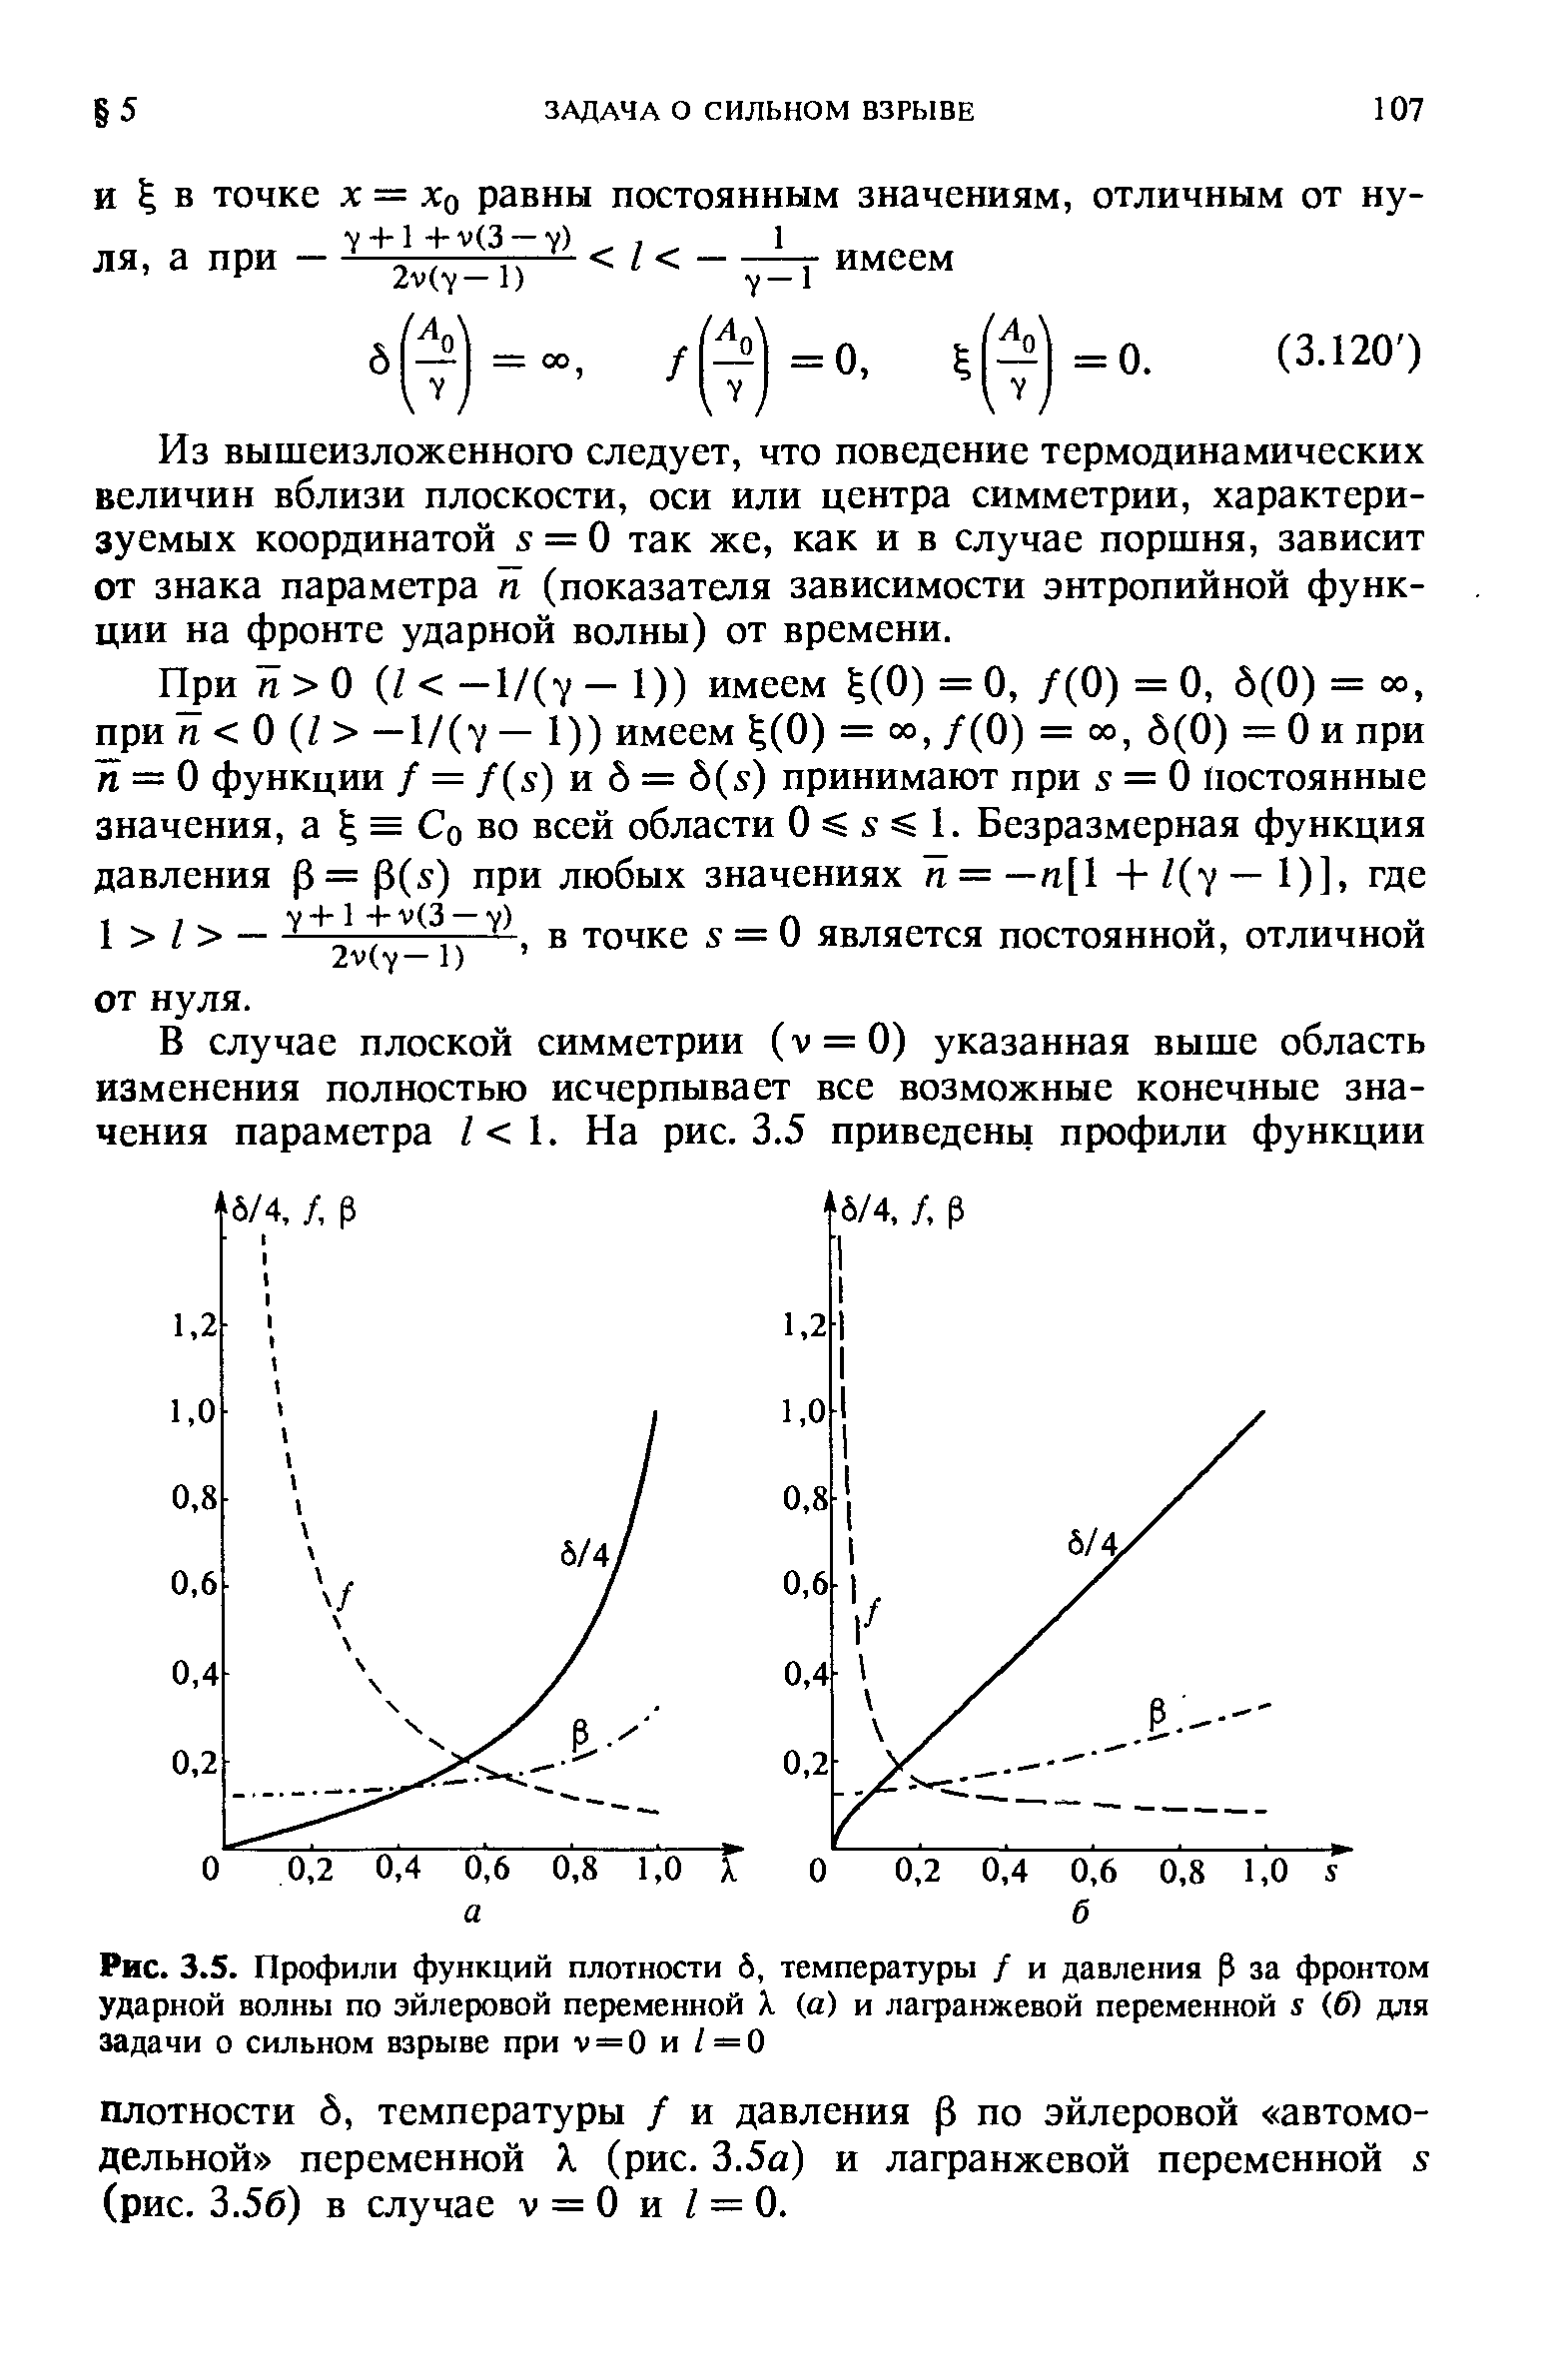 Рис. 3.5. Профили функций плотности 6, температуры / и давления р за <a href="/info/372537">фронтом ударной волны</a> по эйлеровой переменной X (а) и лагранжевой переменной х (б) для задачи о сильном взрыве при V = О и / = О
